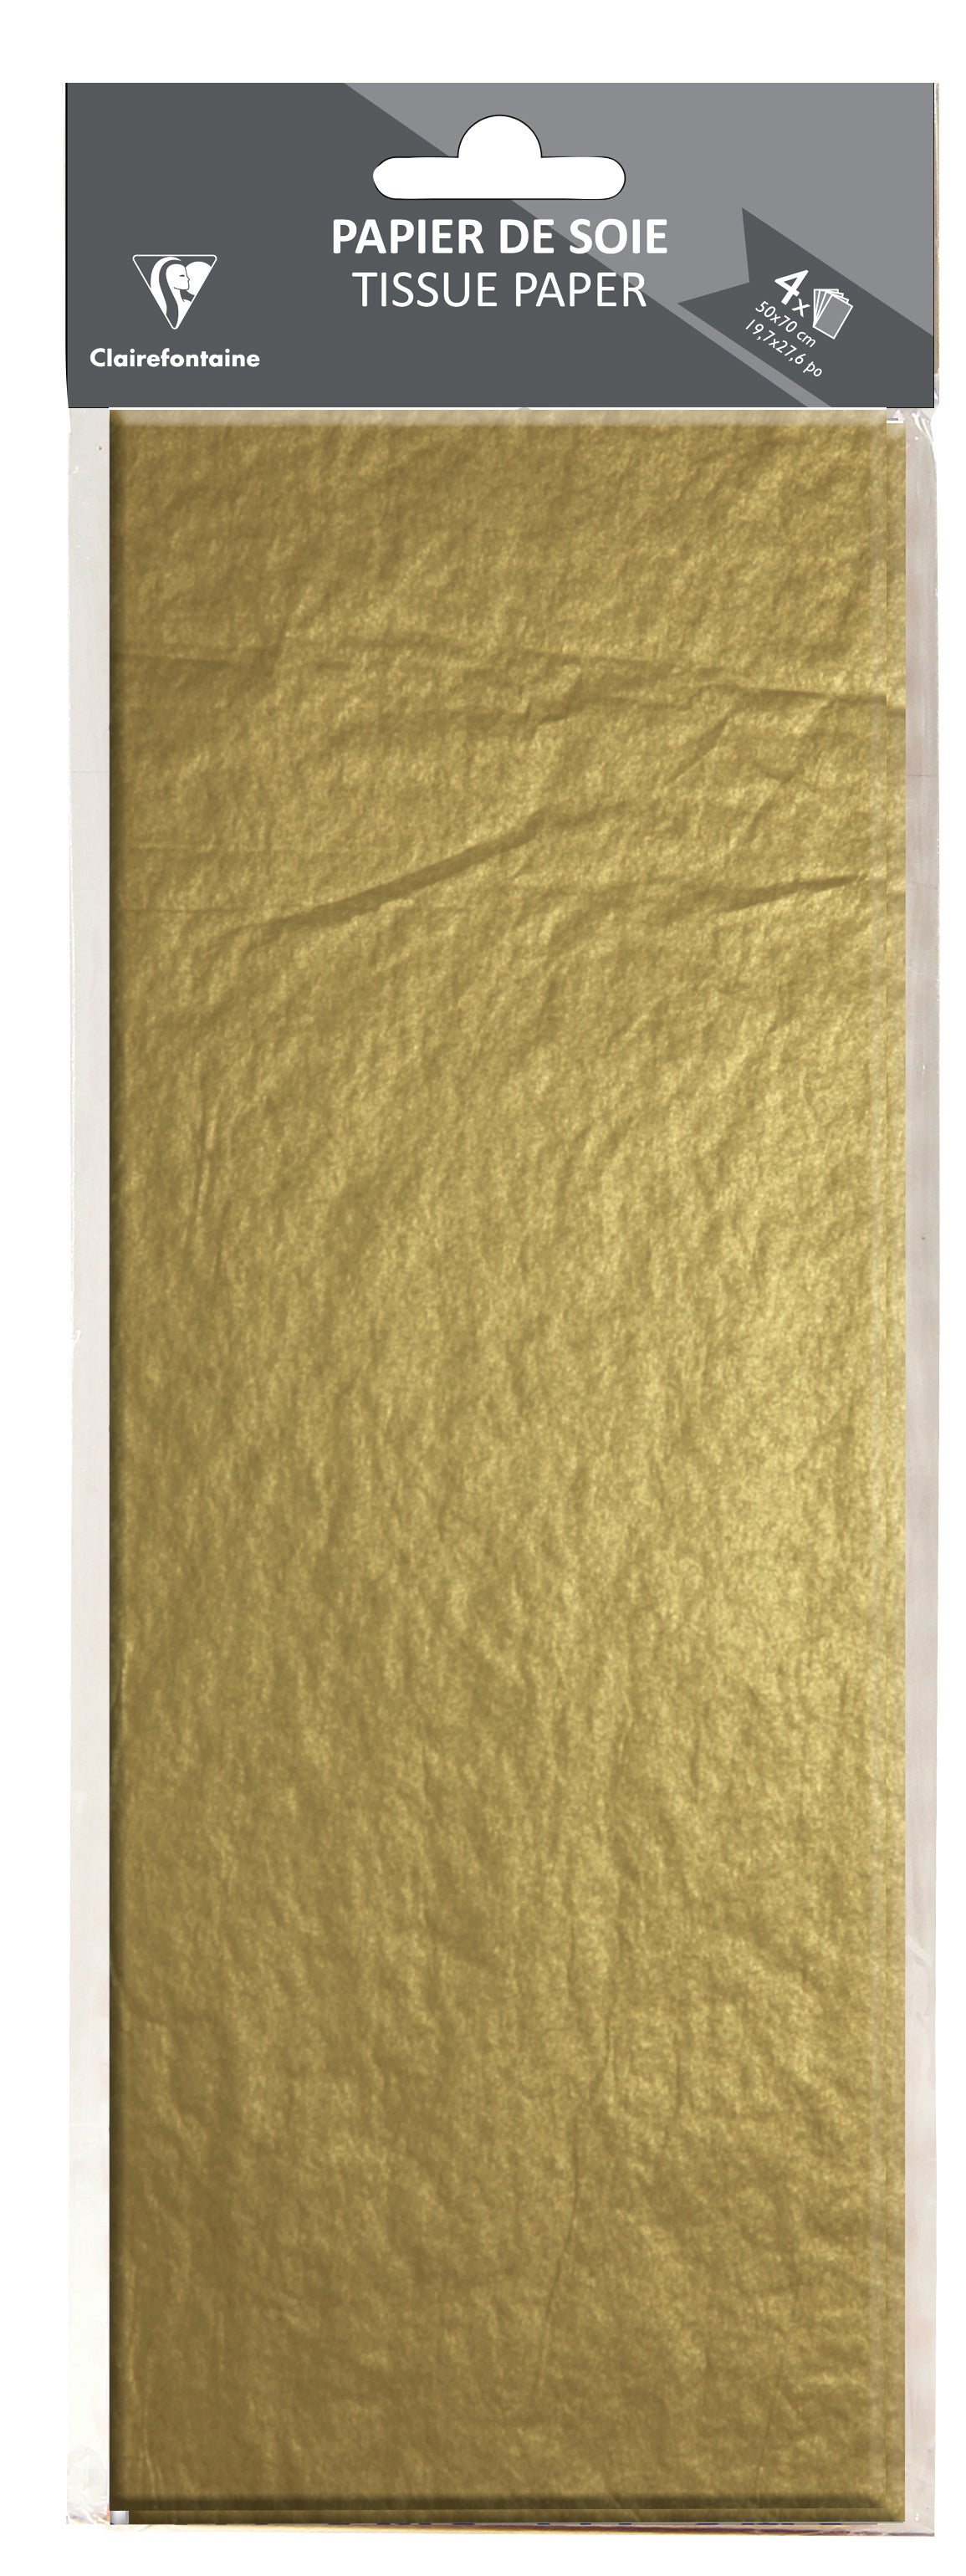 Feuilles de papier de soie Premium The Vert 18 grammes fabrique en France 96 feuilles de 50 cm x 75 cm